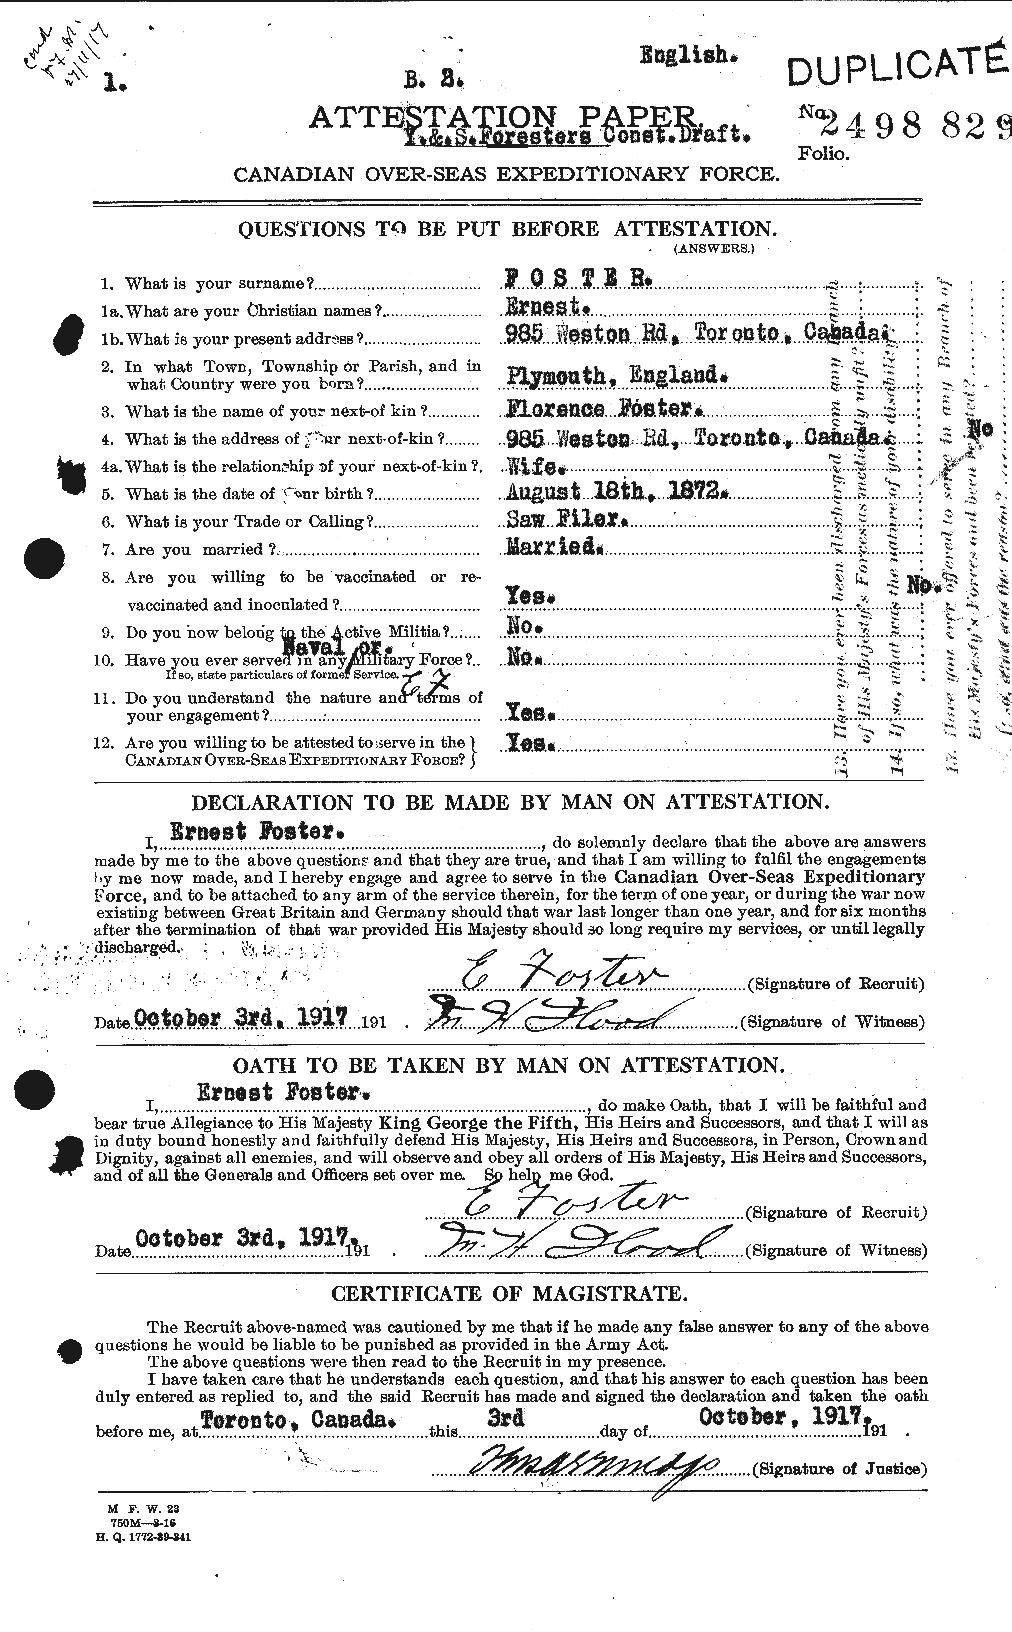 Dossiers du Personnel de la Première Guerre mondiale - CEC 330601a